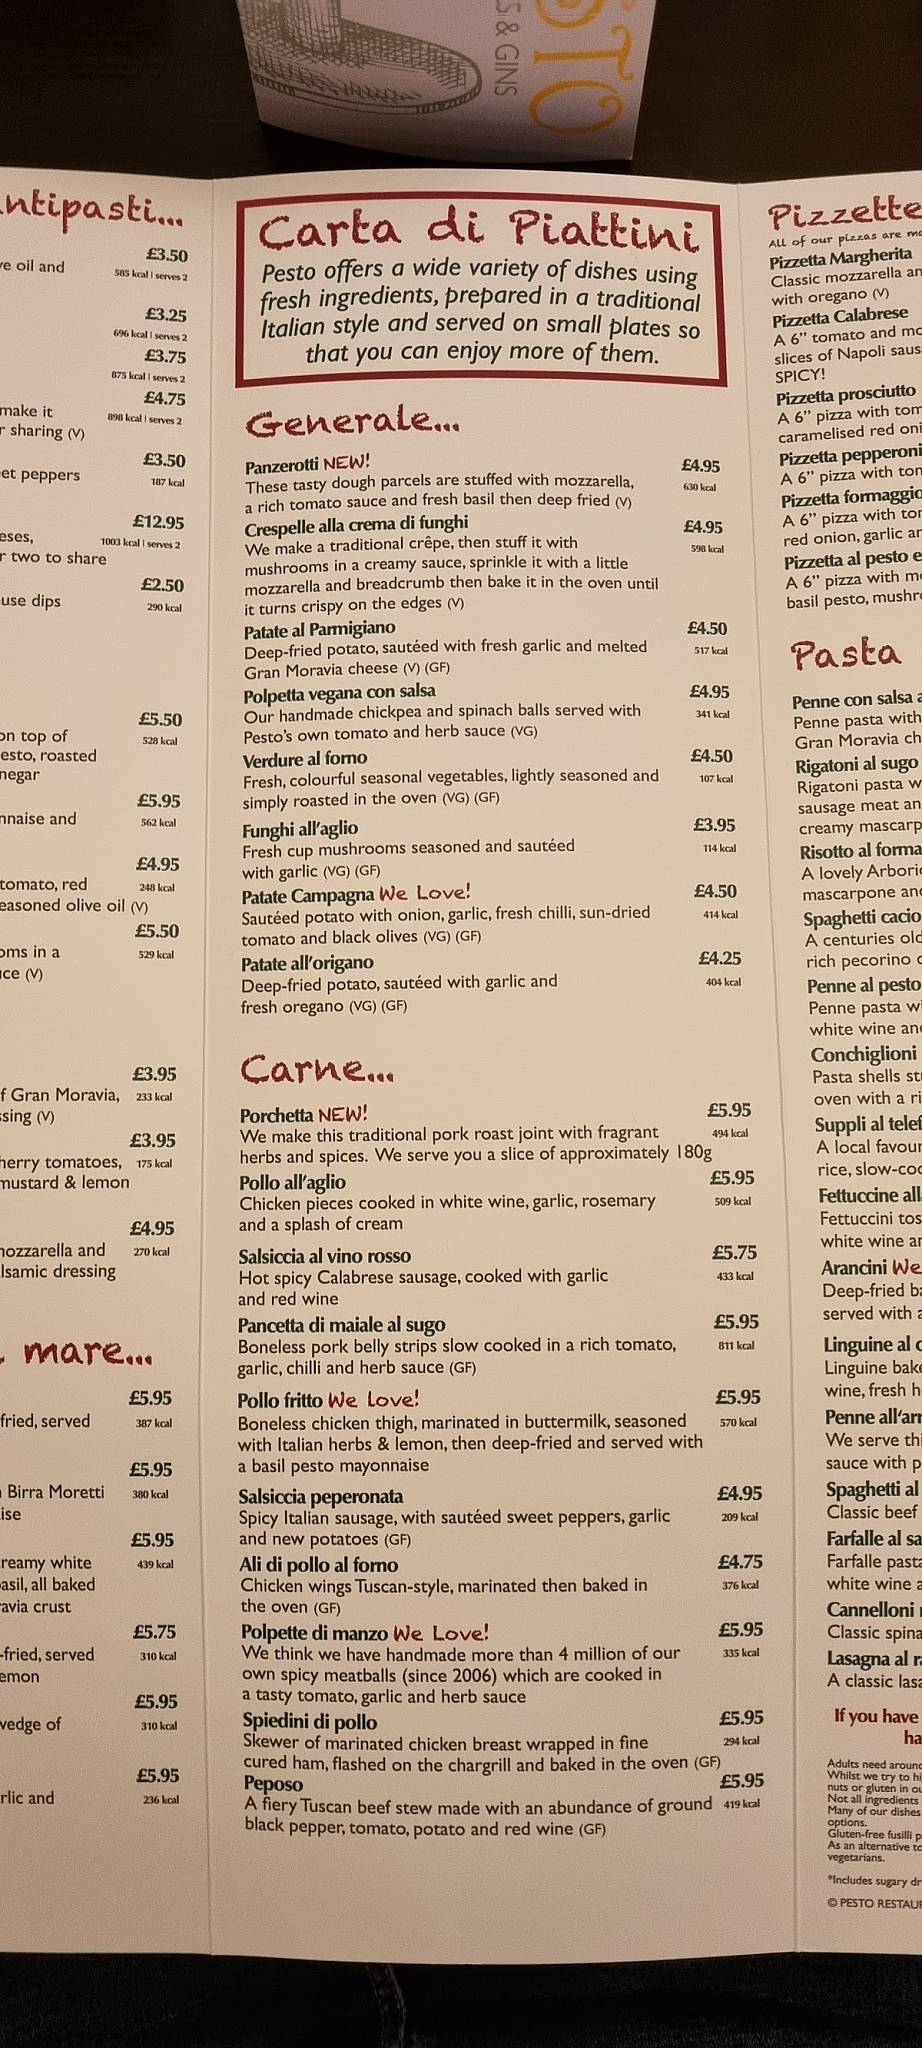 Pesto at the Yacht menu